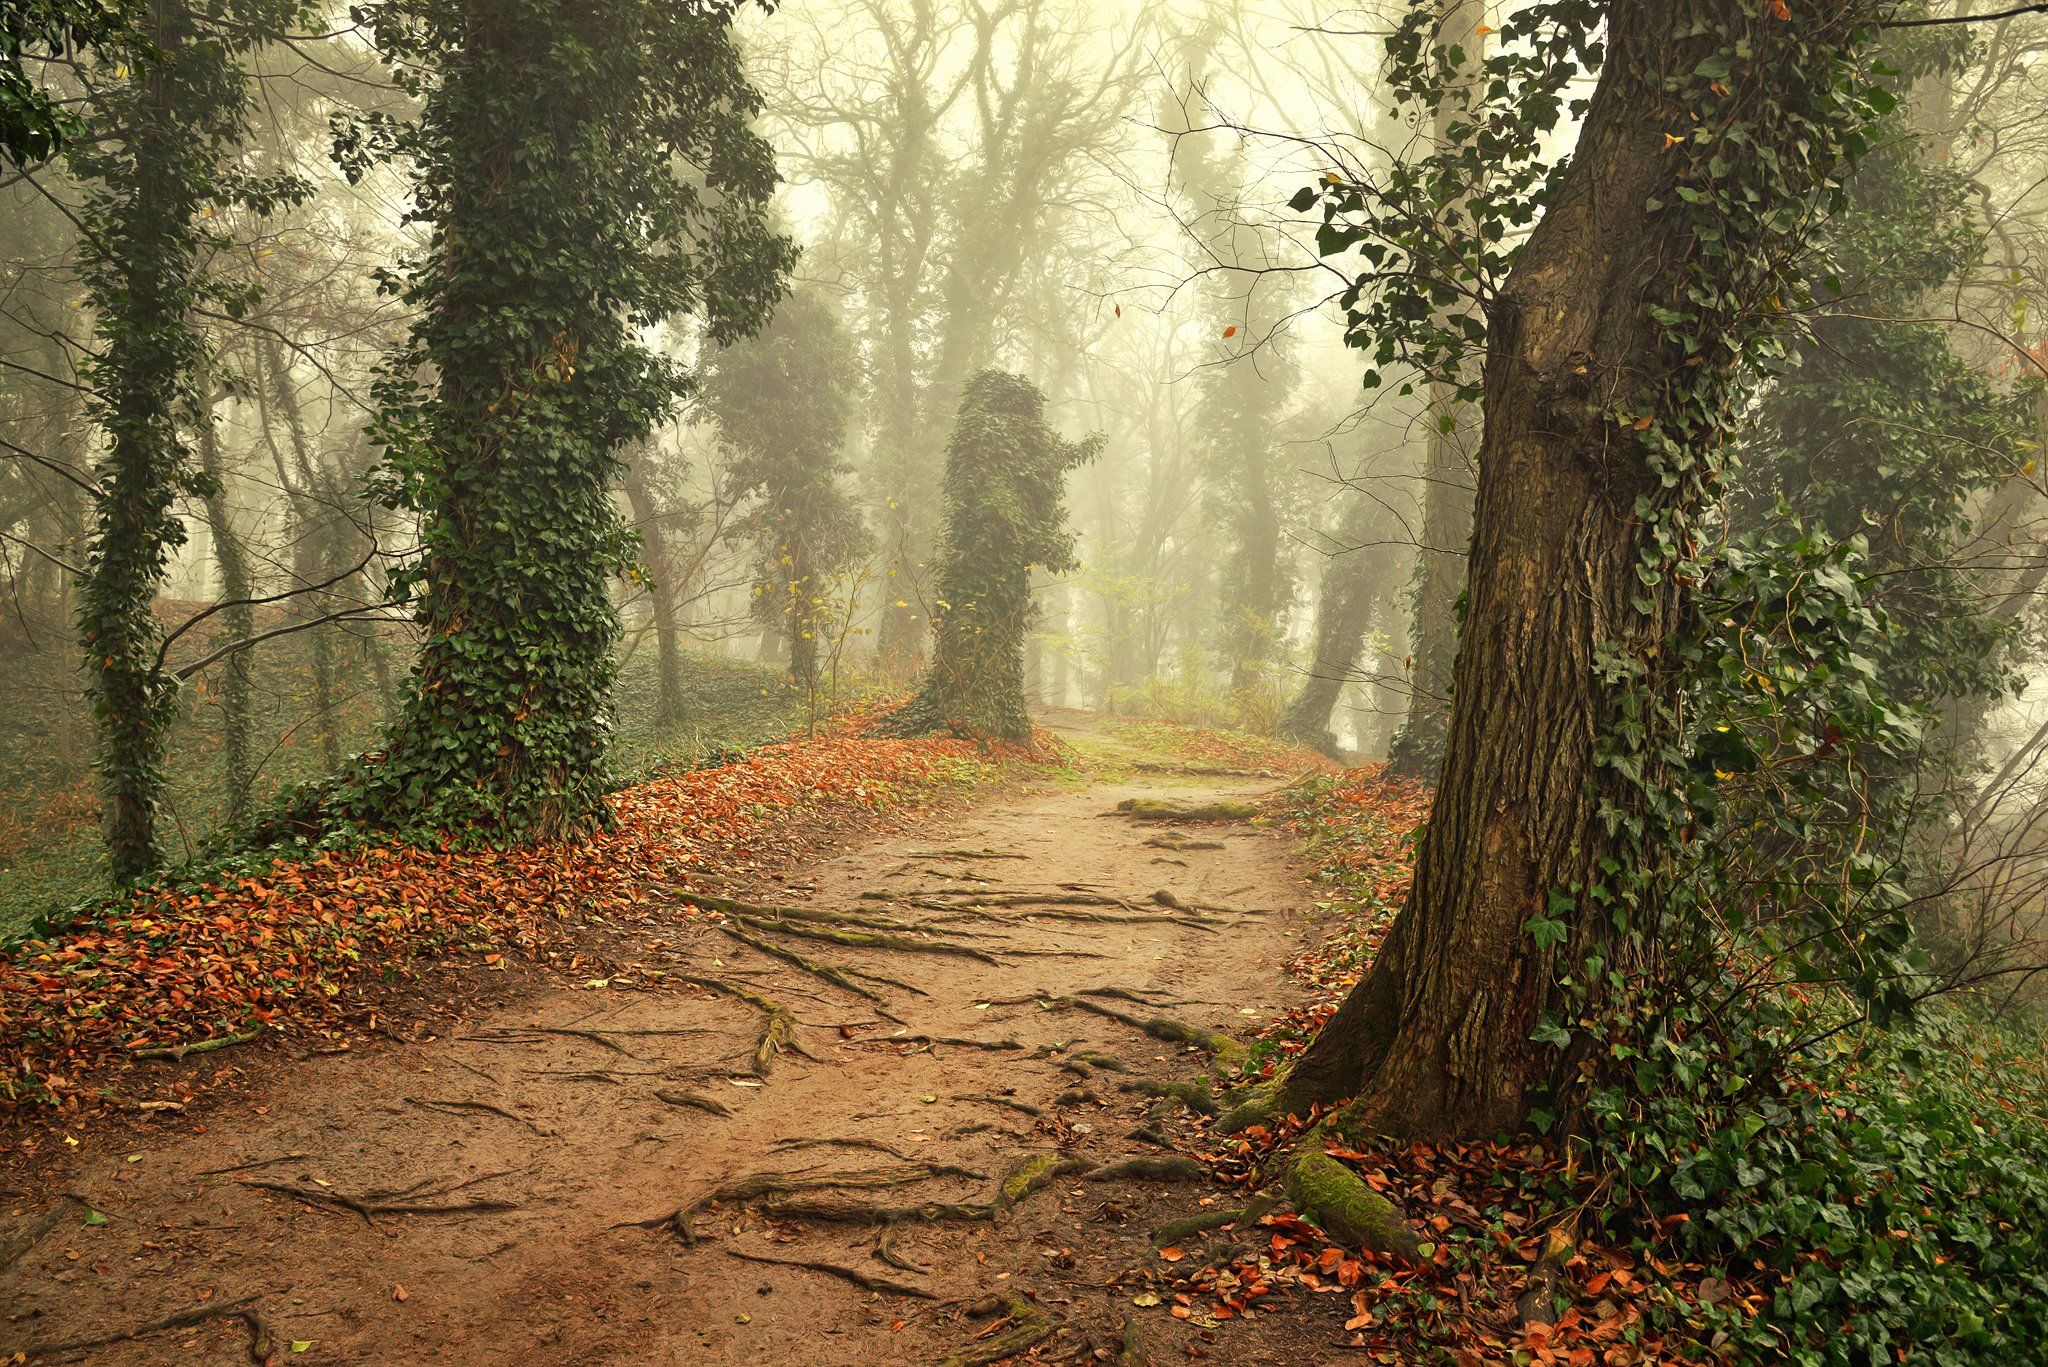 magic garden autumn fall poland dranikowski trees плющ ivy road path mist magic foggy day, Radoslaw Dranikowski